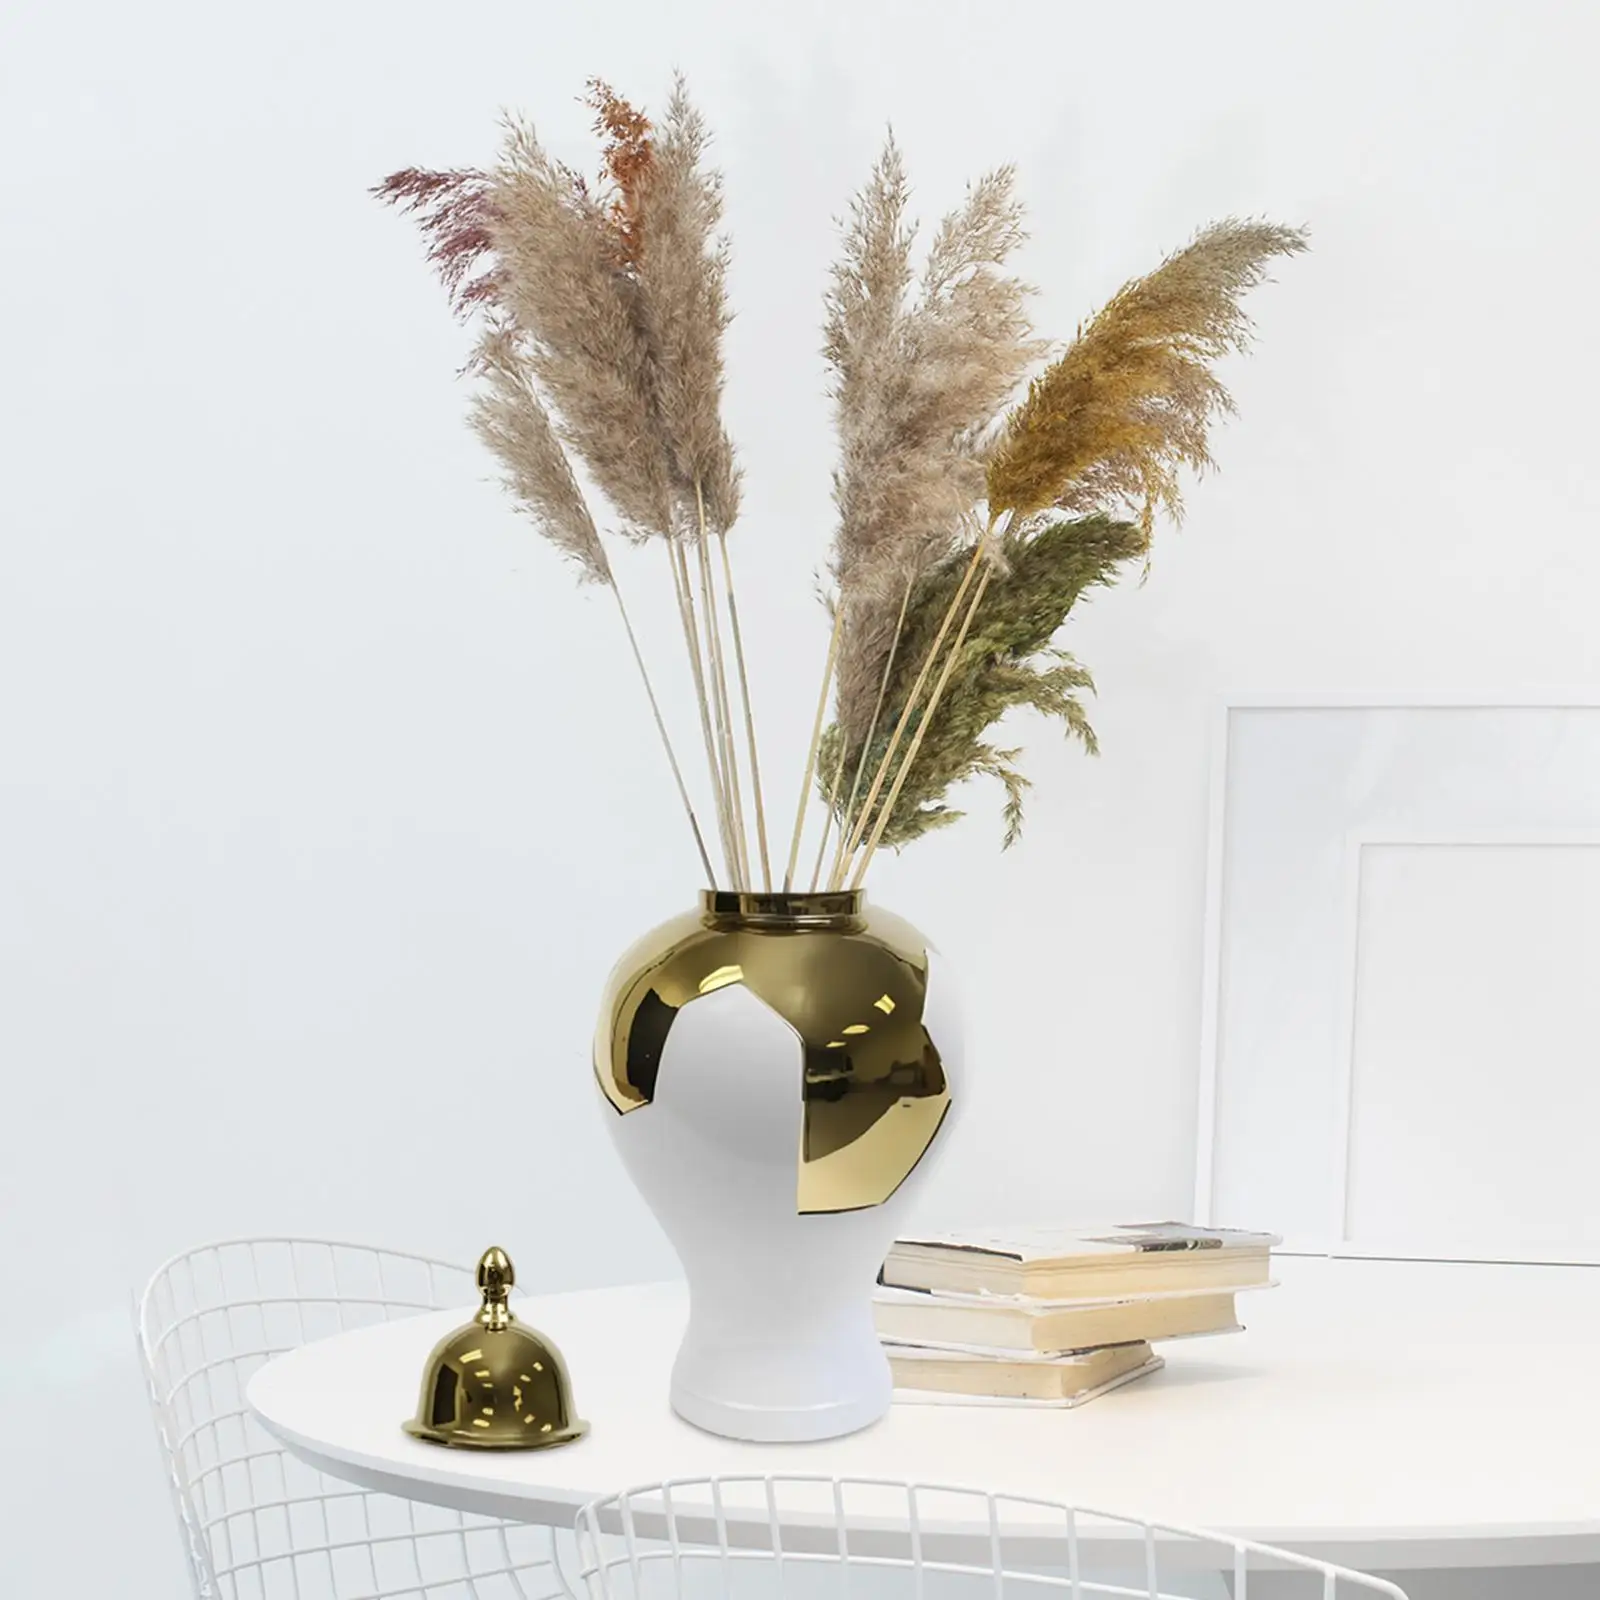 Ceramic Ginger Jar Storage Elegant Display Flower Vase Porcelain Tea Jar for Home Table Centerpieces Living Room Party Bedroom